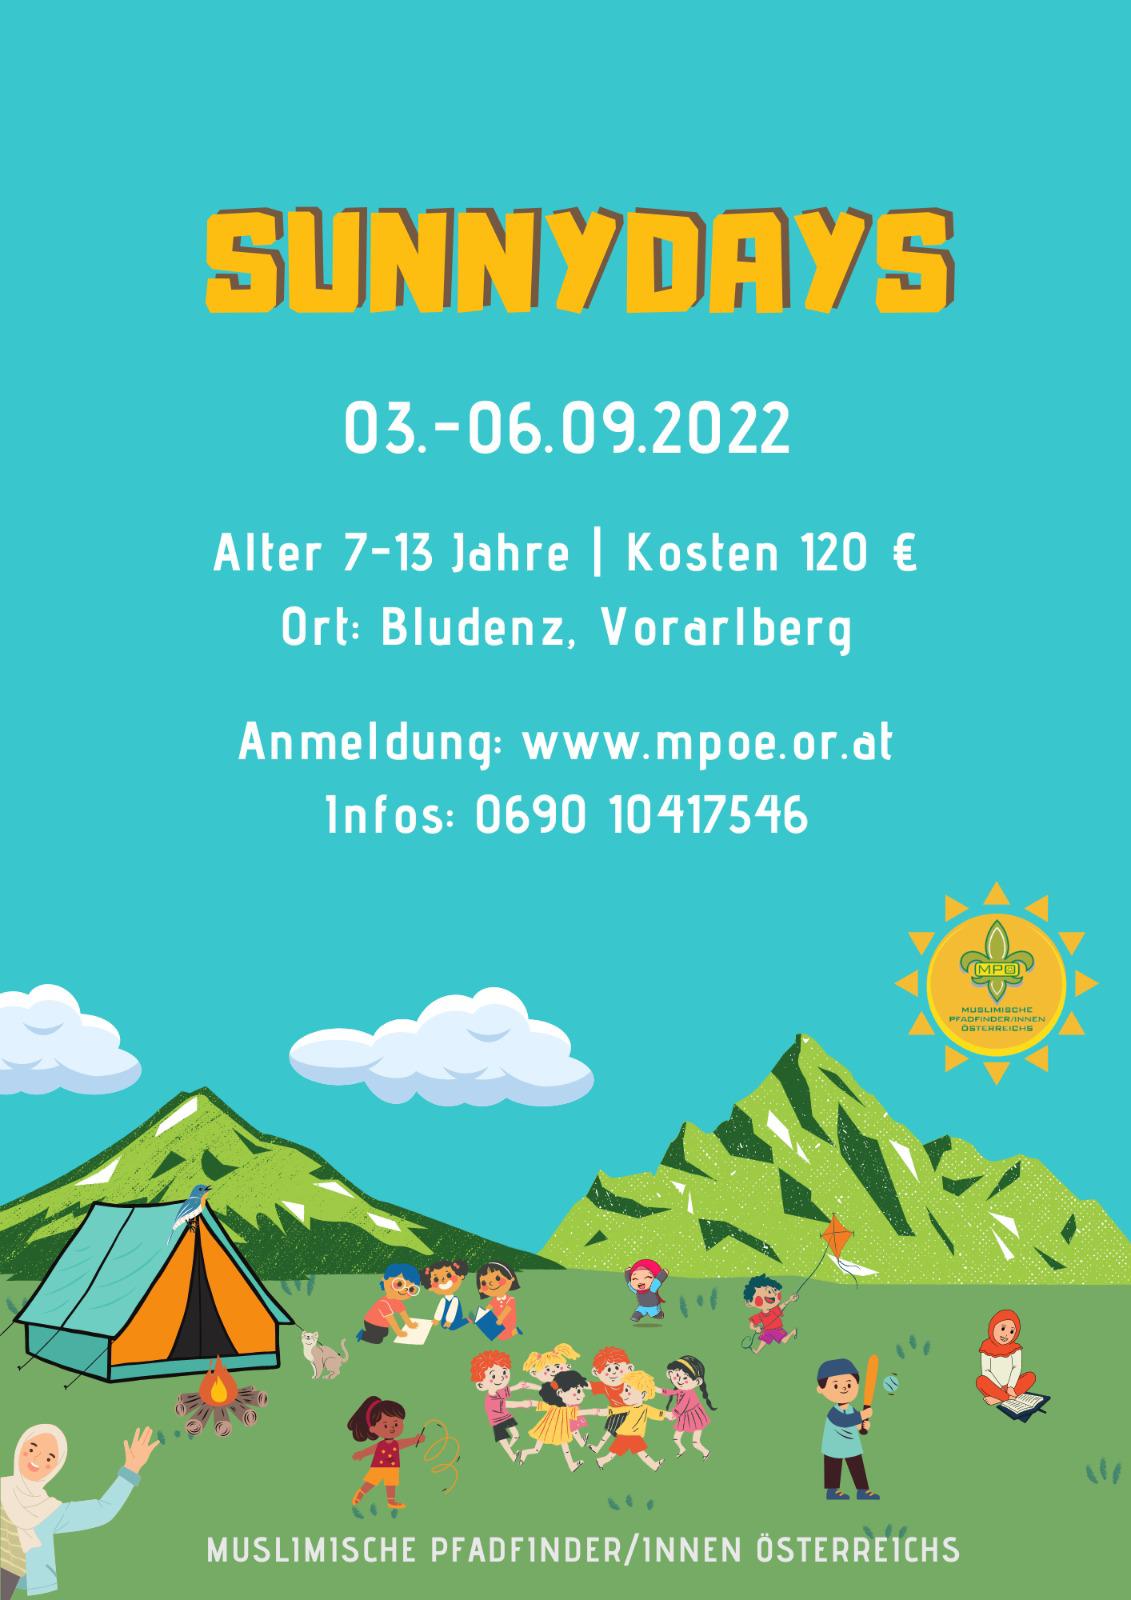 [VBG] Sunnydays 2022